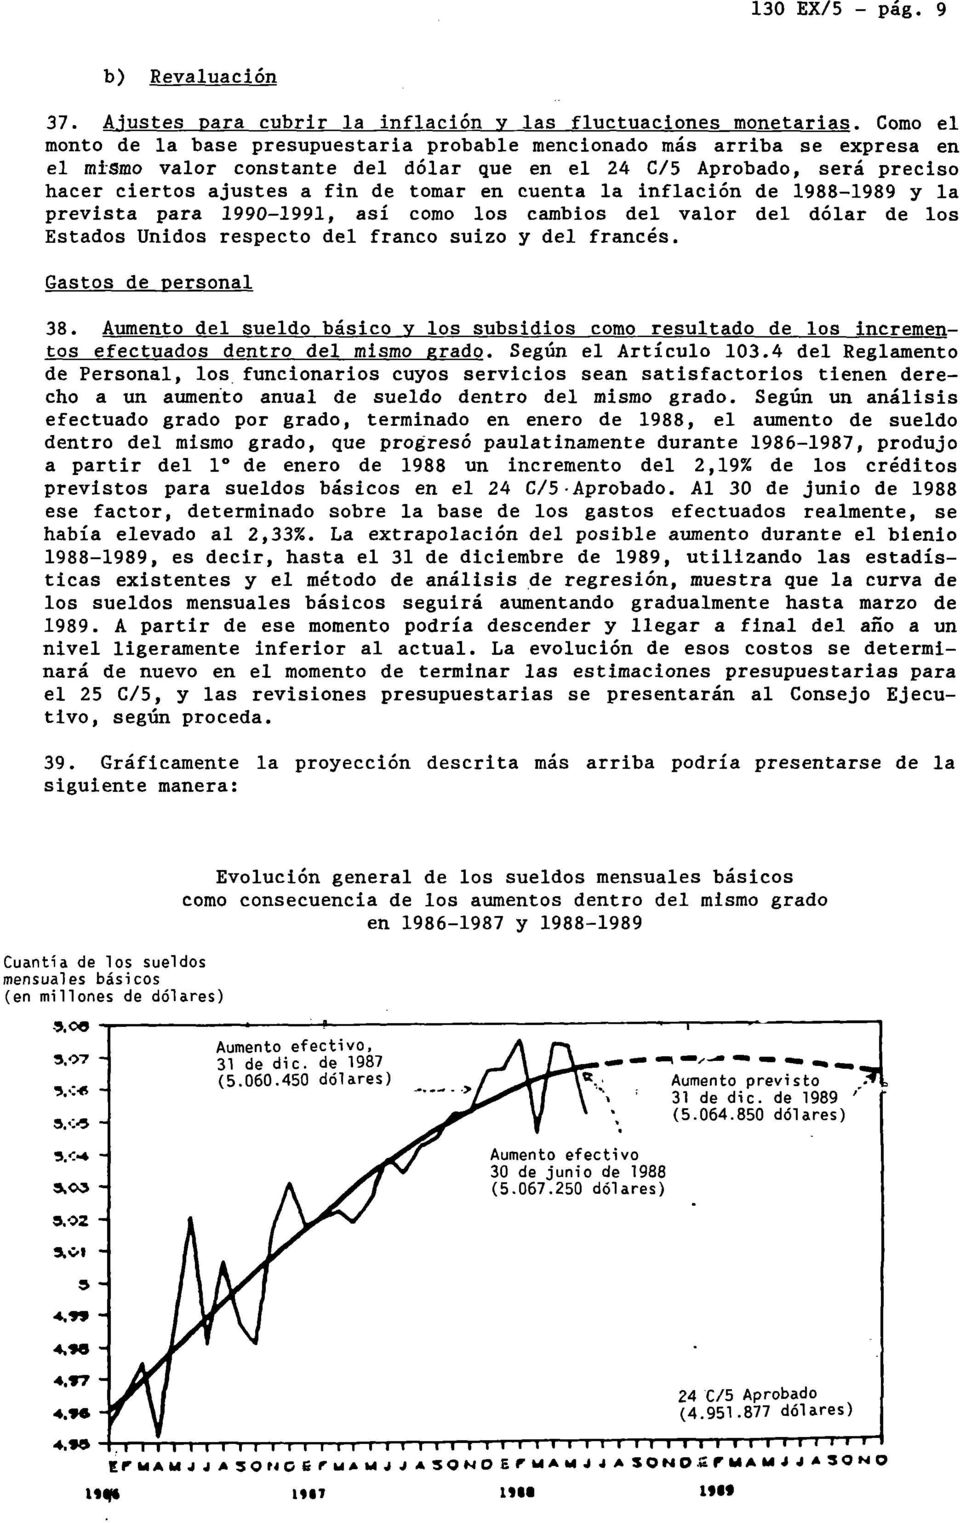 en cuenta la inflación de 1988-1989 y la prevista para 1990-1991, así como los cambios del valor del dólar de los Estados Unidos respecto del franco suizo y del francés. Gastos de personal 38.